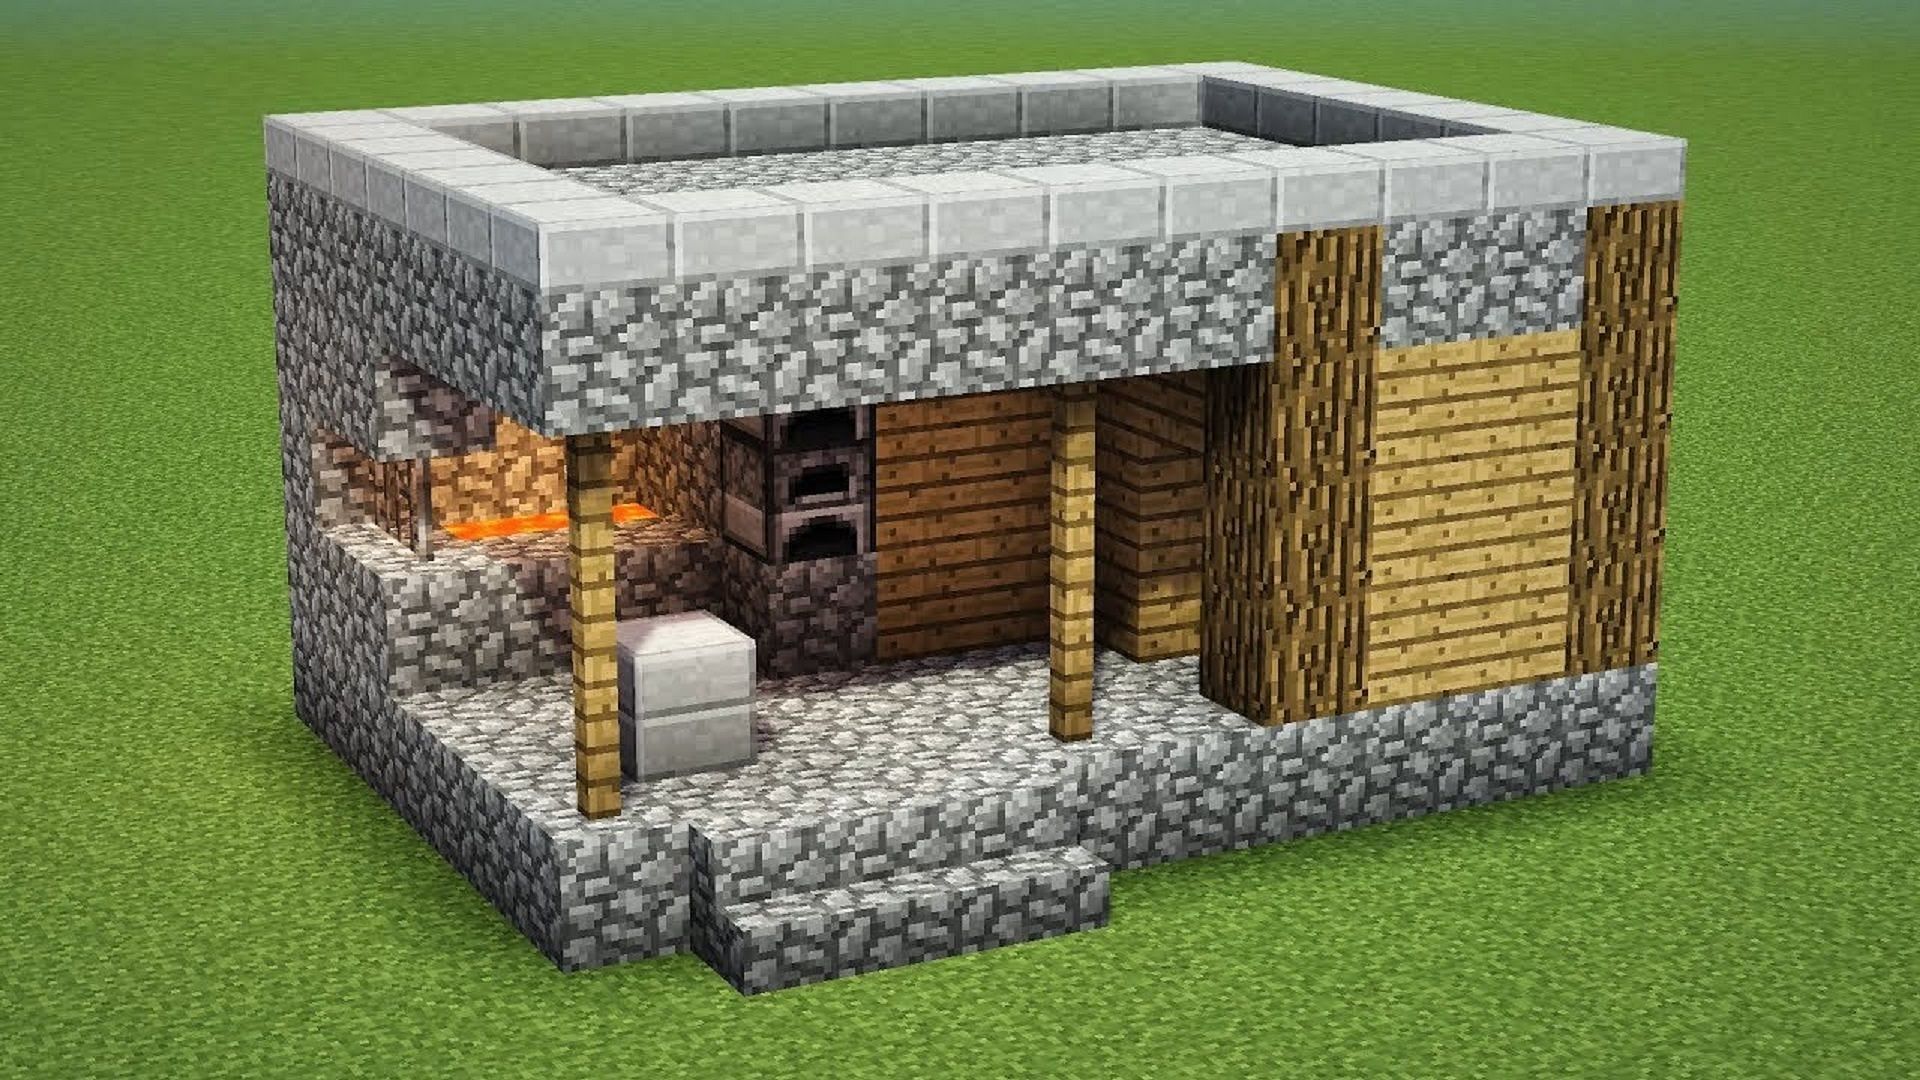 minecraft build a forge village